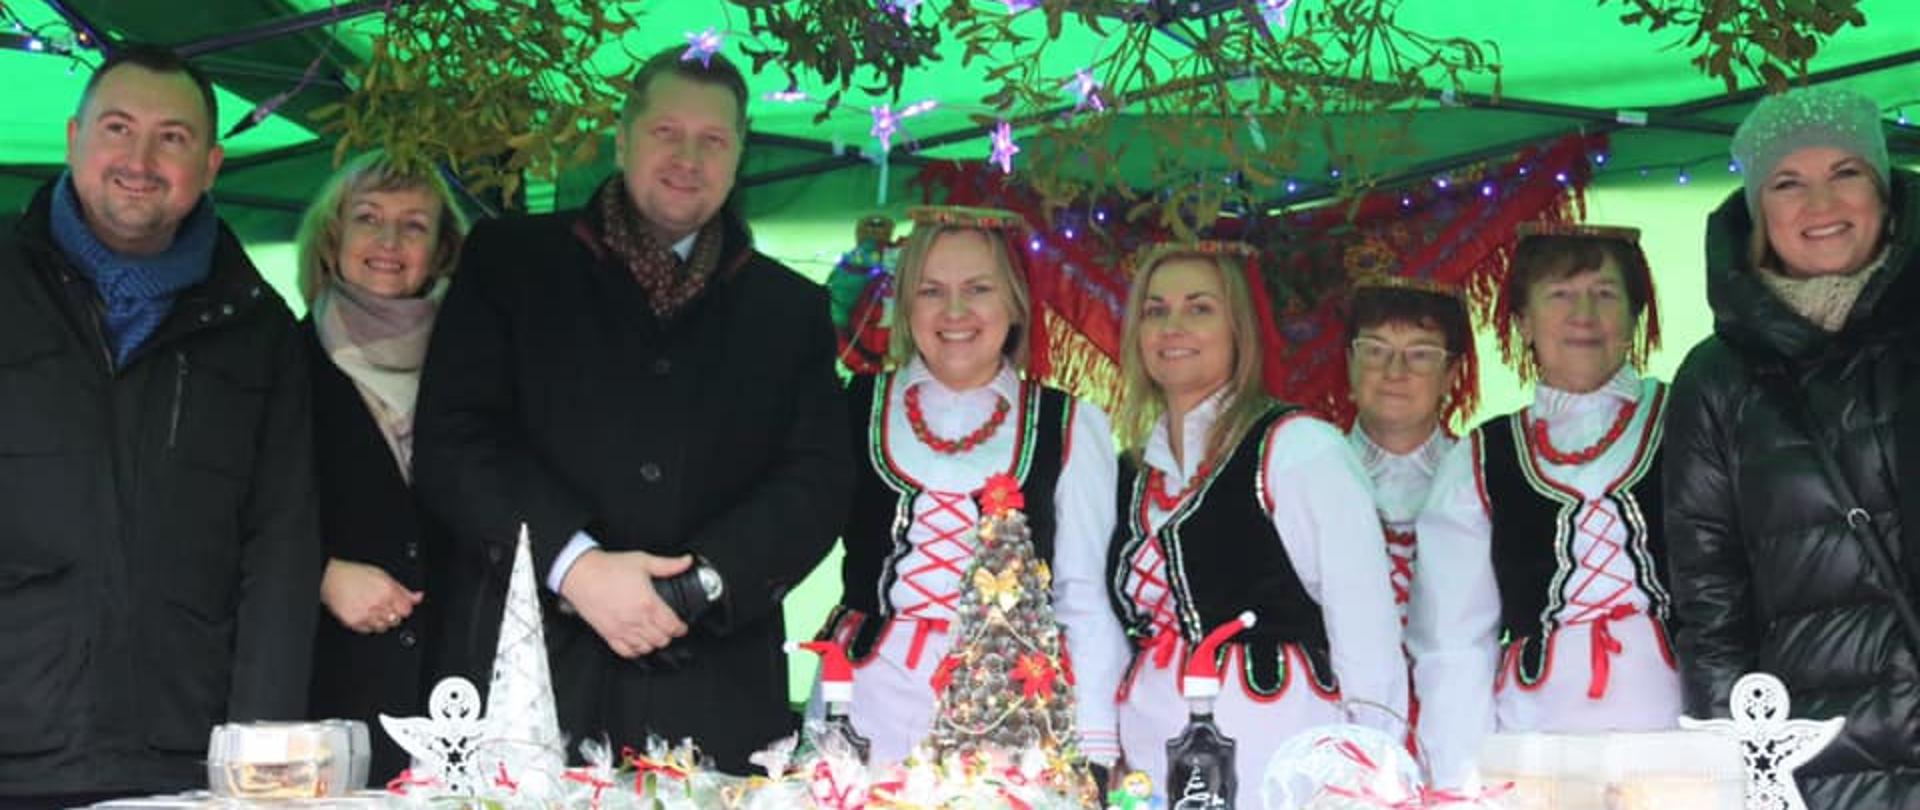 Jarmark Bożonarodzeniowy w Poniatowej z udziałem ministra Przemysław Czarnka, minister Przemysław Czarnek w towarzystwie koła gospodyń wiejskich i mieszkańców Poniatowej.